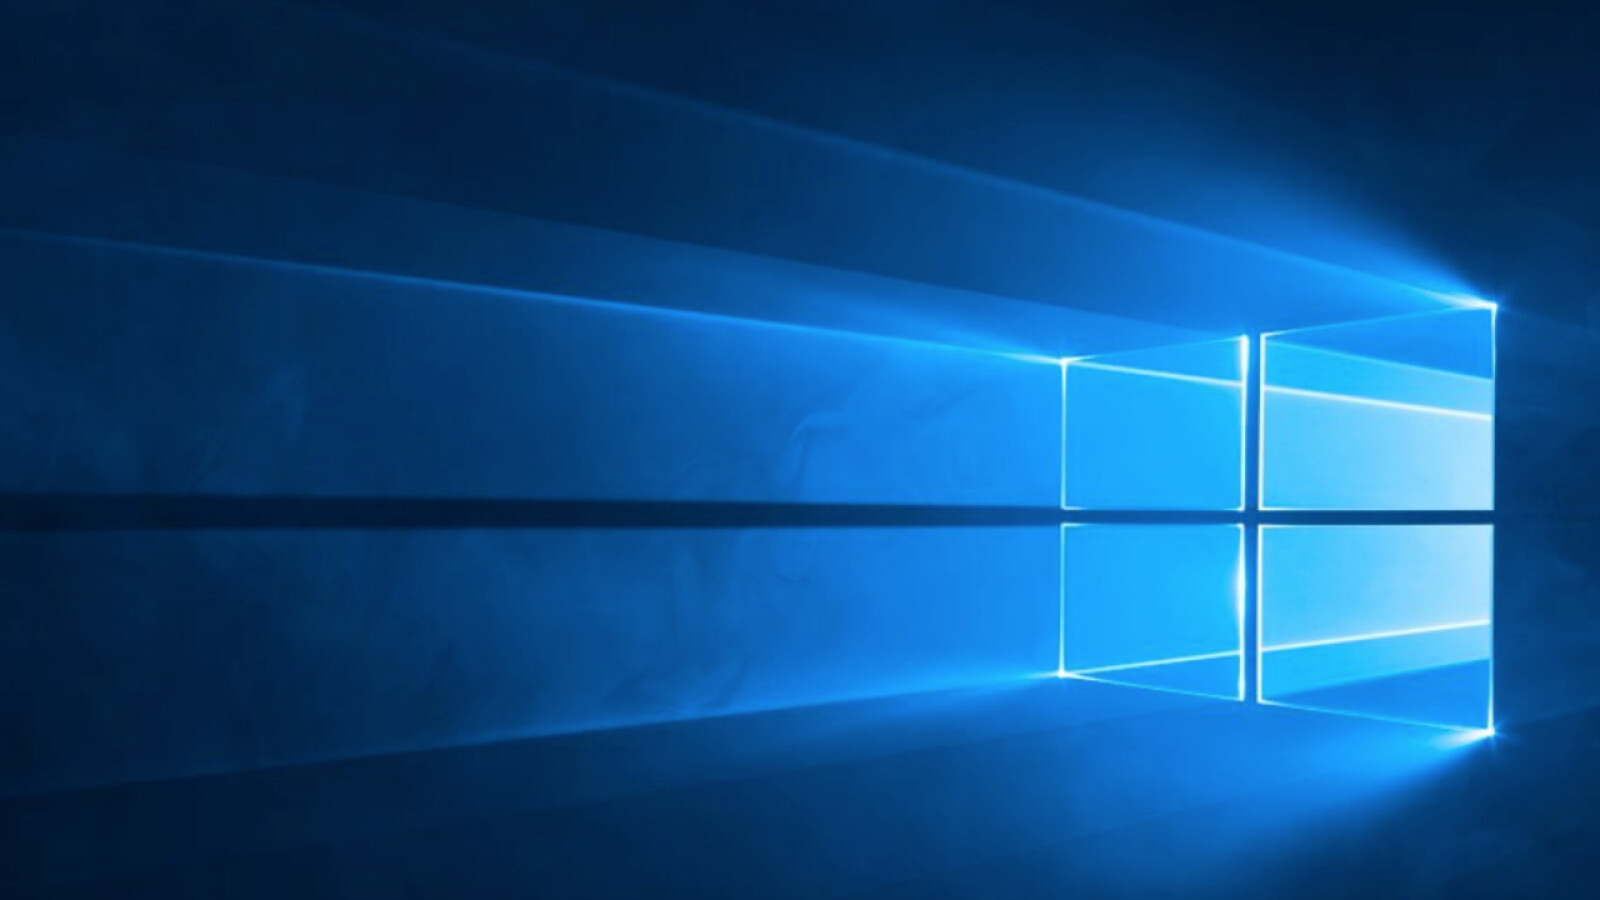 Windows 10: Microsoft verlängert Frist für kostenloses Update abermals - NETZWELT